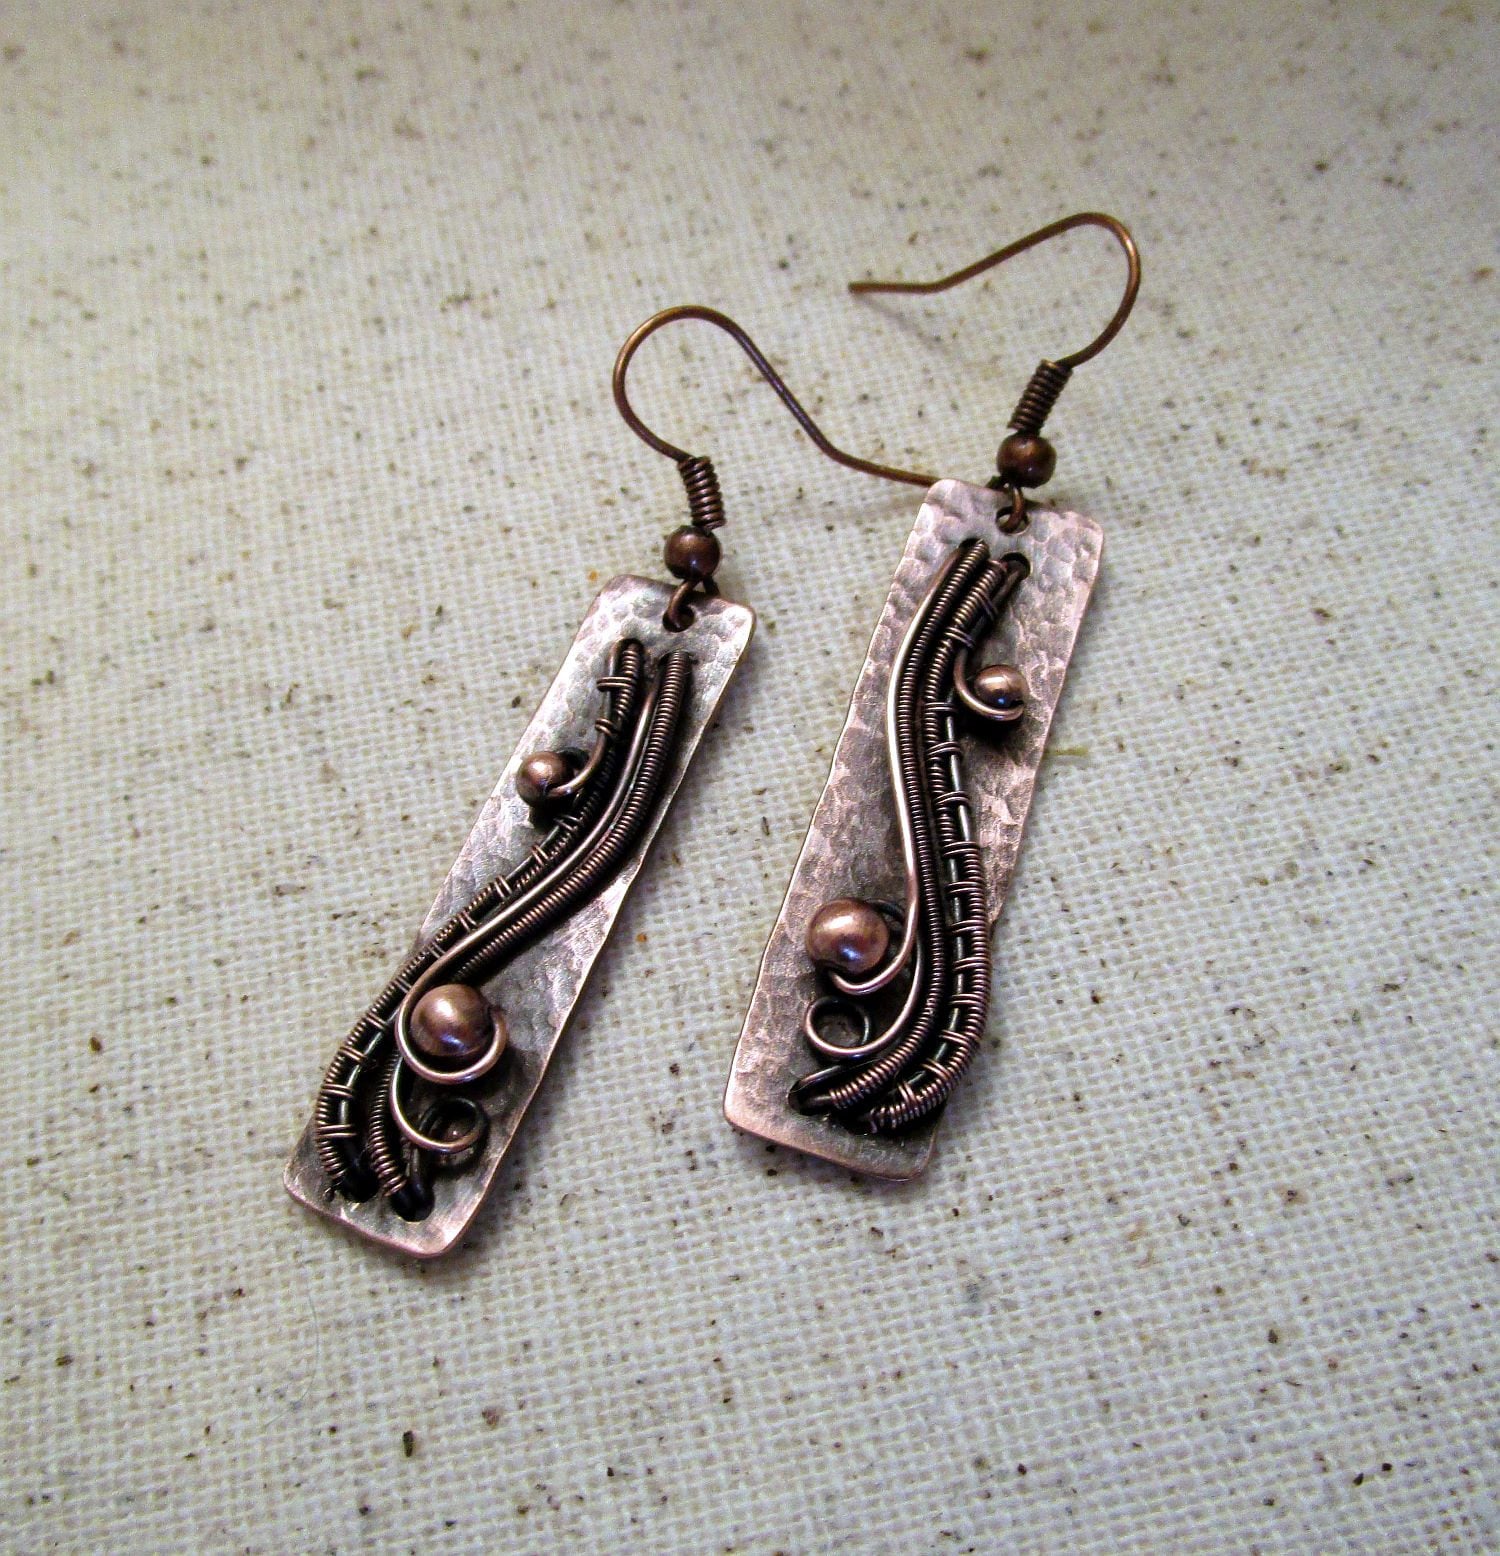 Stick Earrings wire wrapped earrings Woven Wire Jewelry | Etsy